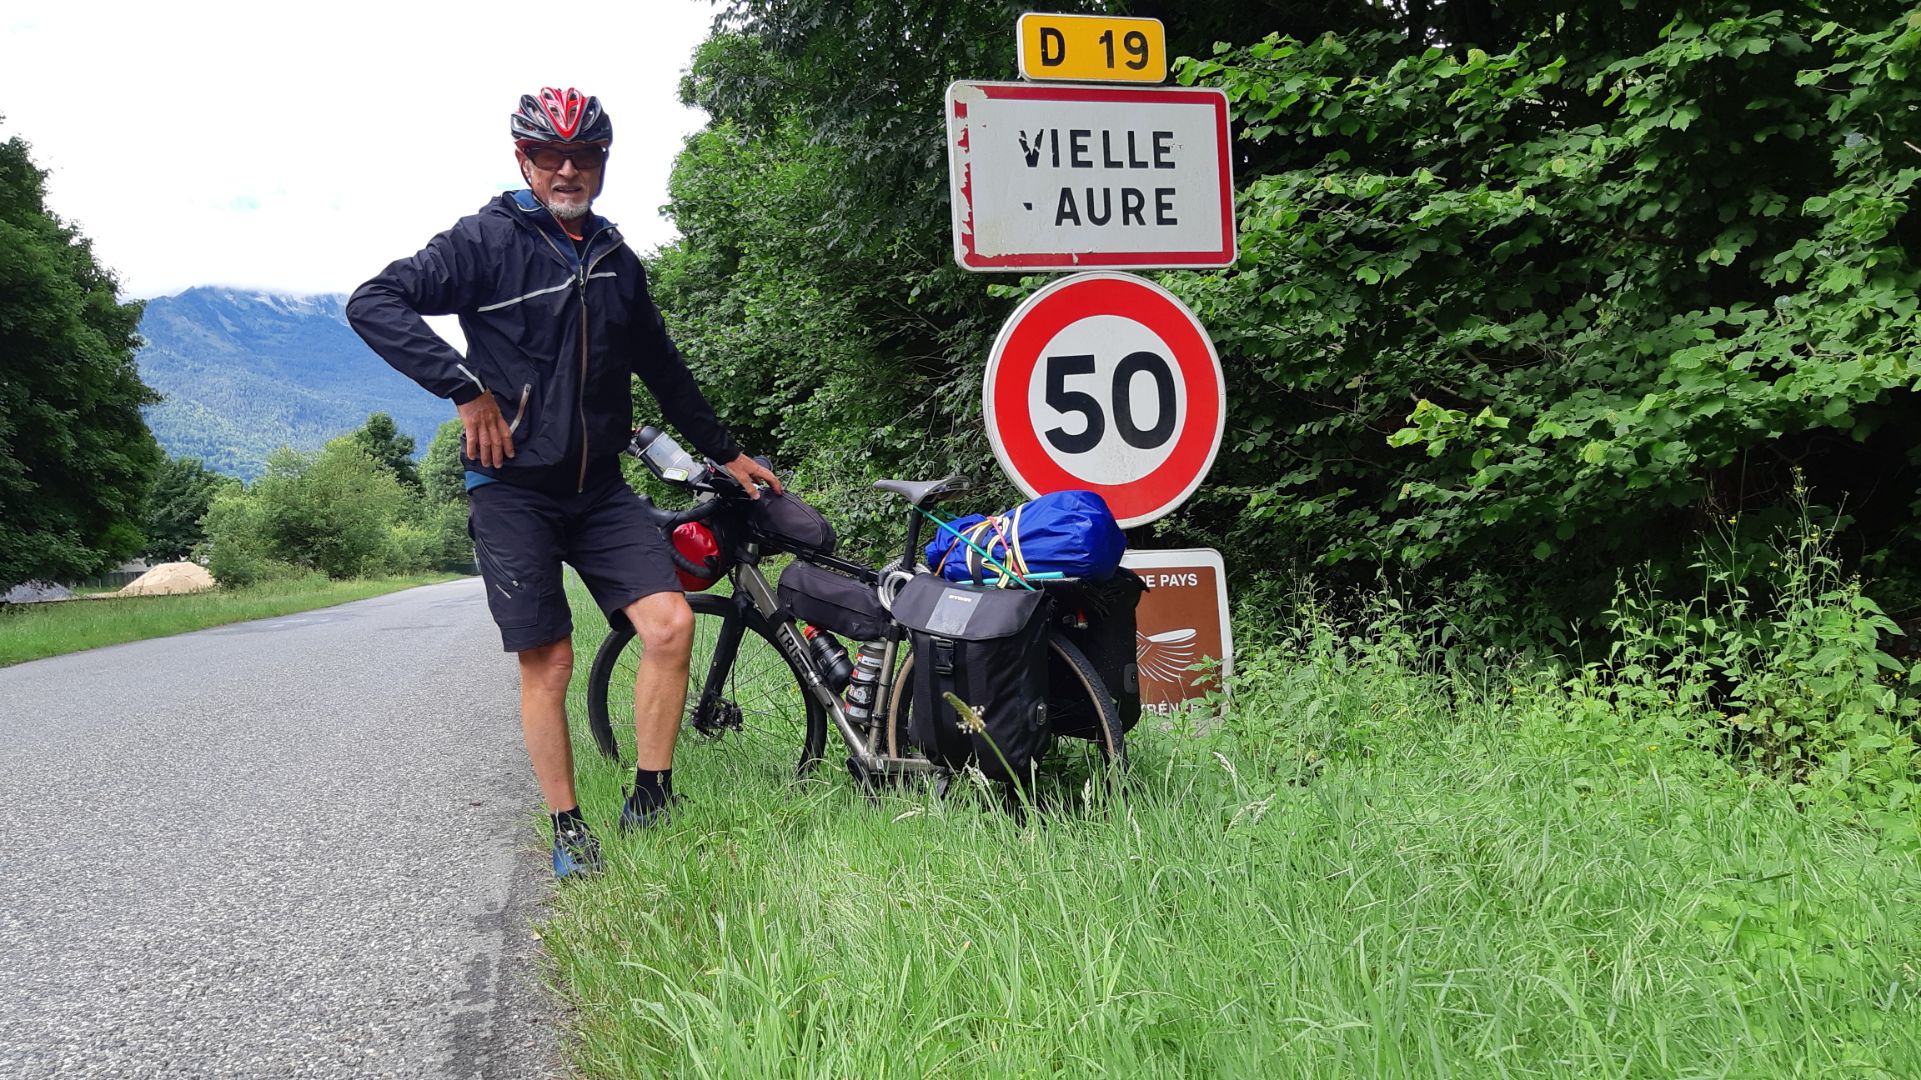 Chapeau Jean-Pierre pour ton super périple de 1015 Kms "De Porspo. à Vielle Aure" dans les Hautes Pyrénées.